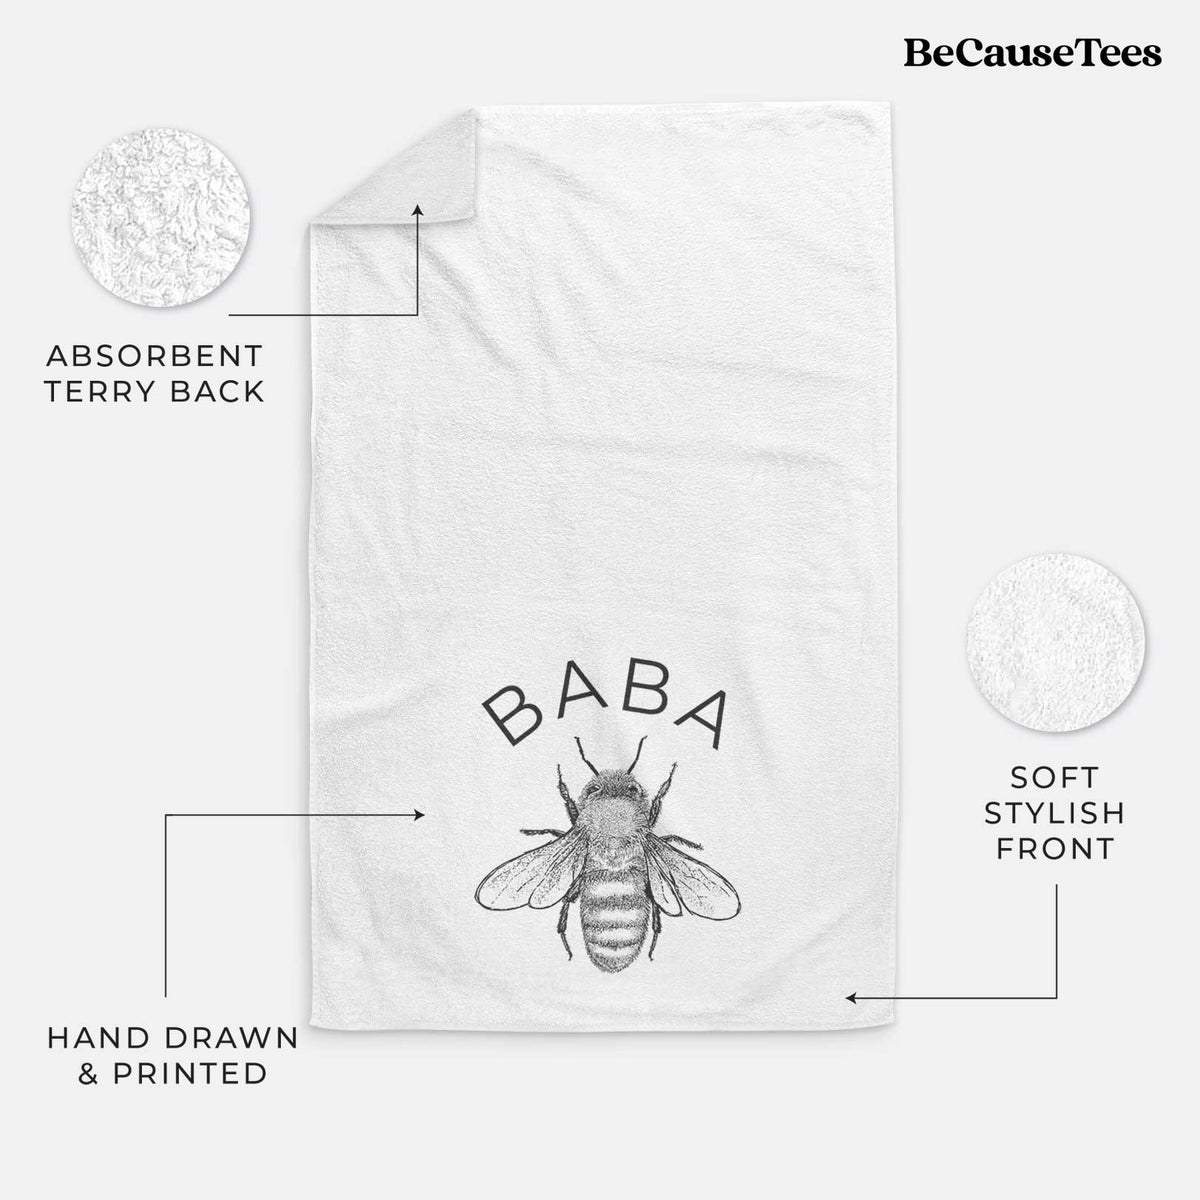 Baba Bee Hand Towel